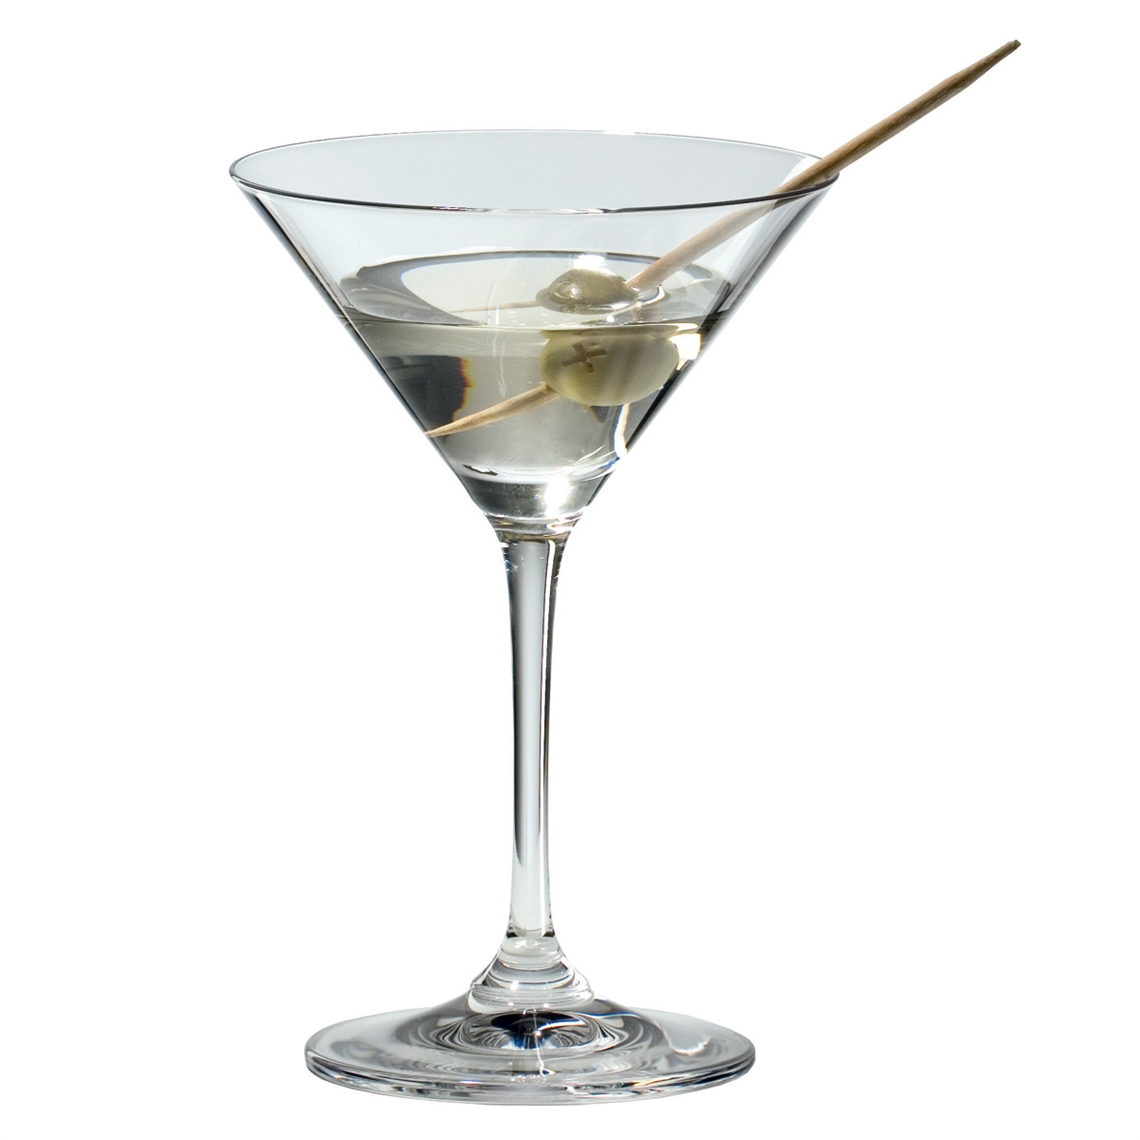 View more restaurant glasses - glencairn from our Martini Glasses range